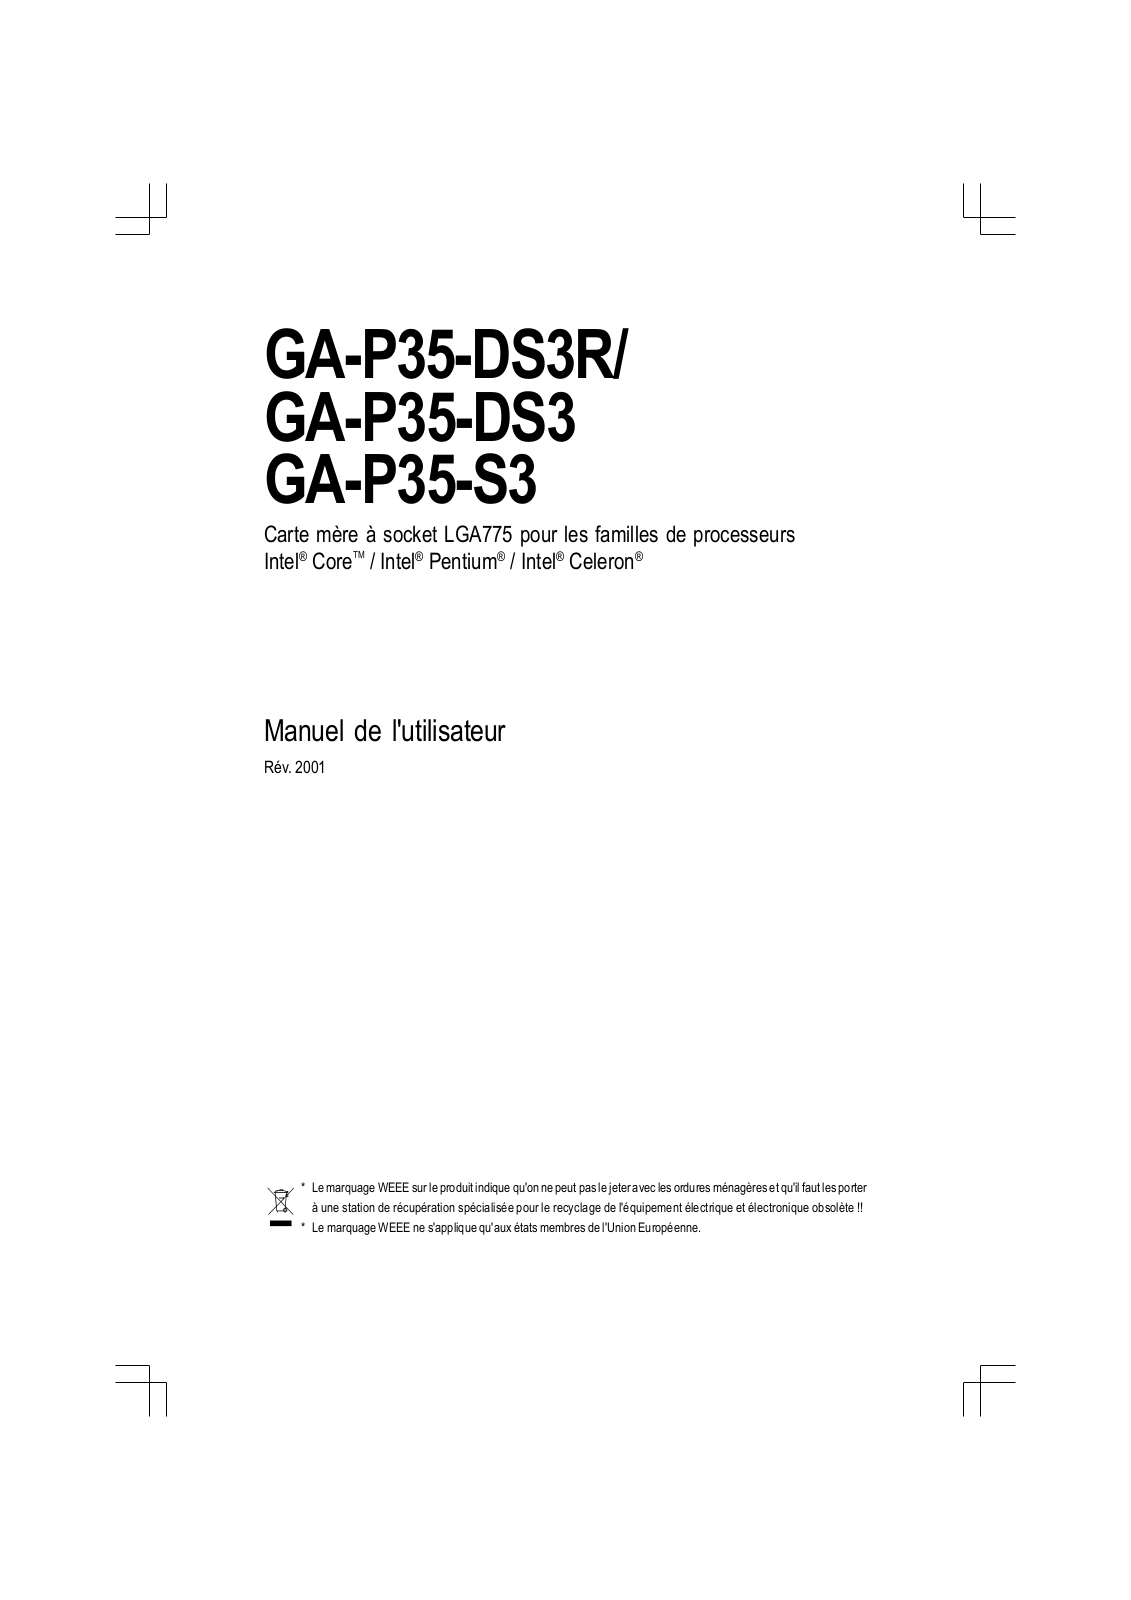 GIGABYTE GA-P35-S3G, GA-P35-DS3P, GA-P35-DS3R User Manual